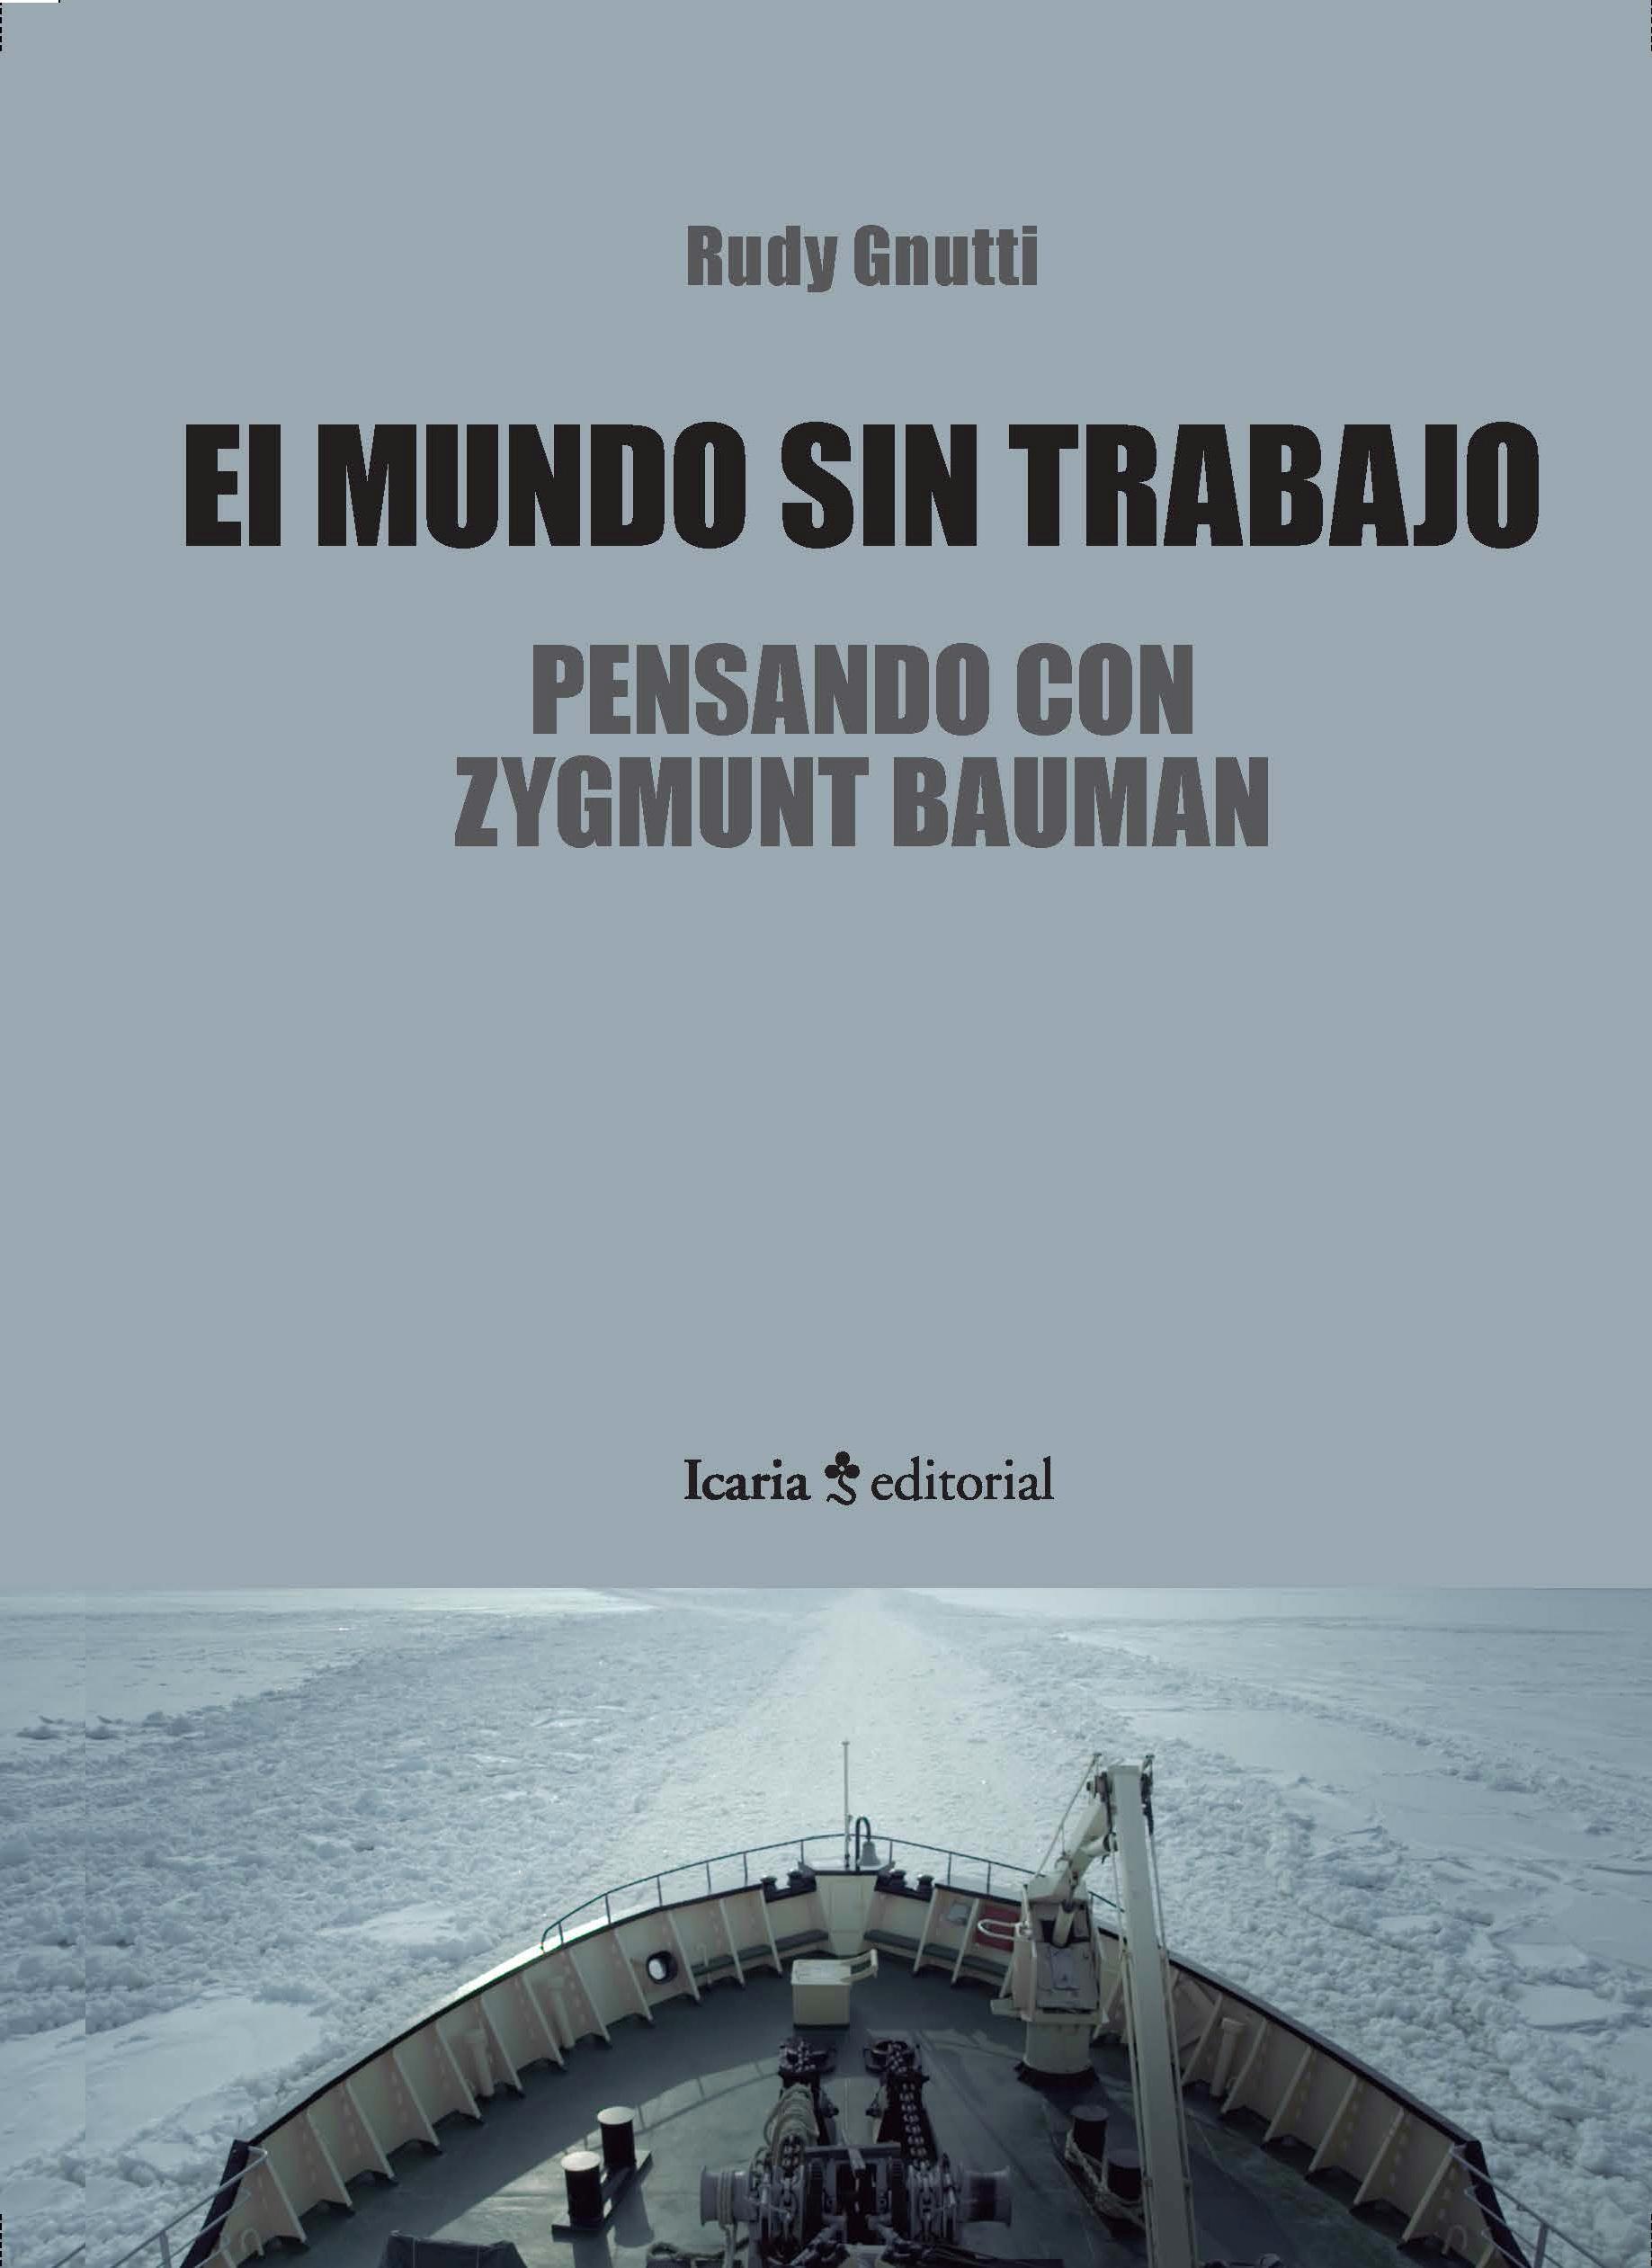 El mundo sin trabajo "Pensando con Zygmunt Bauman "